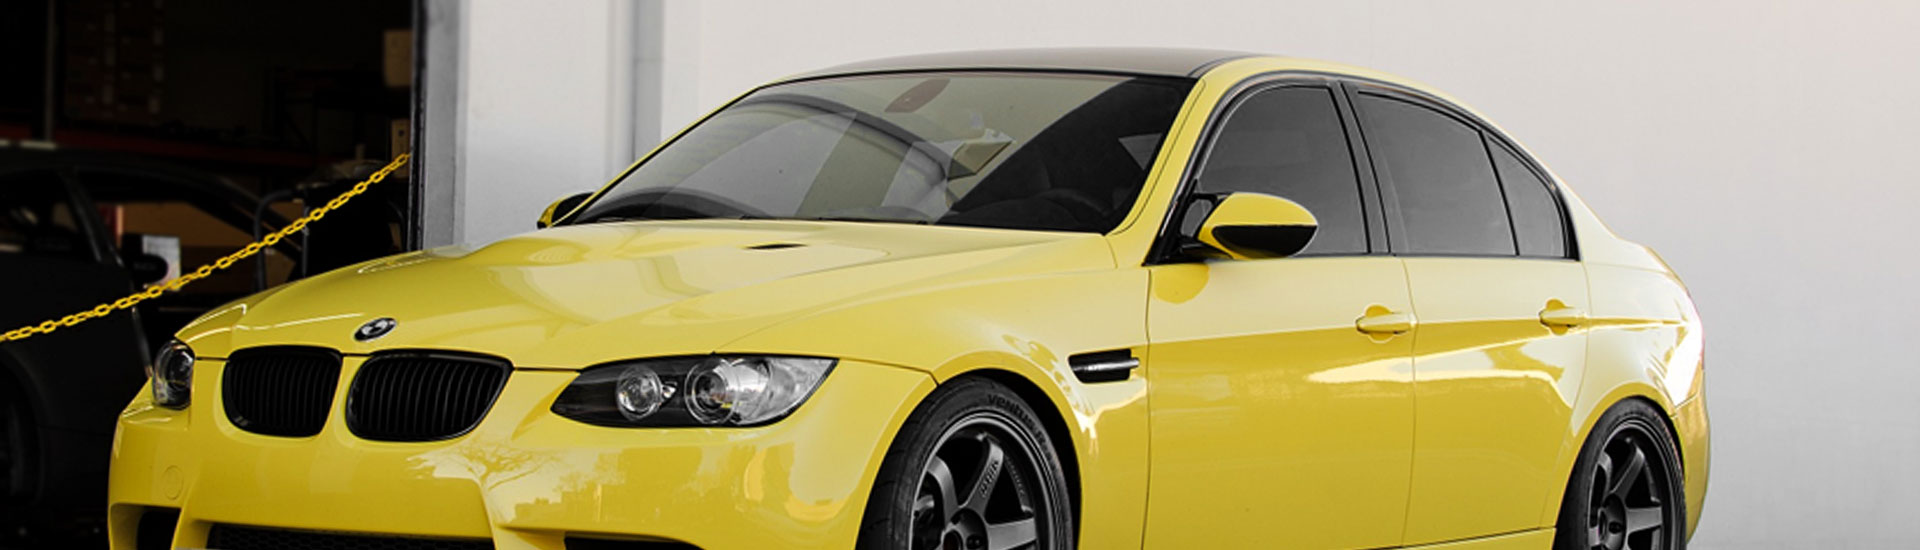 2007 BMW X5 Window Tint